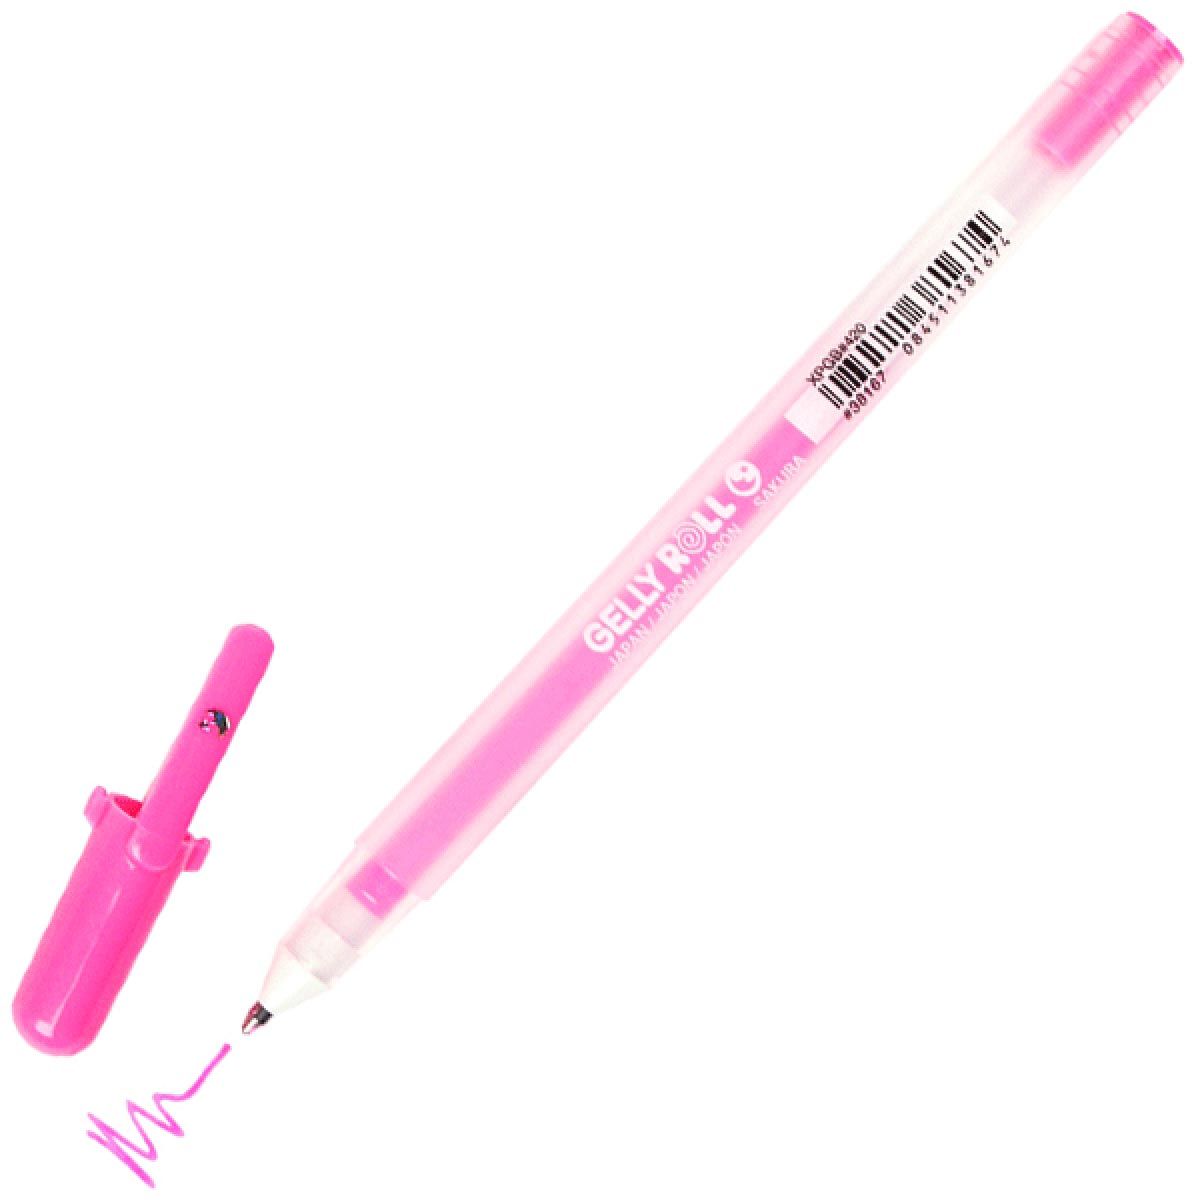 Gelly Roll Moonlight Gel Pen - Fluorescent Pink